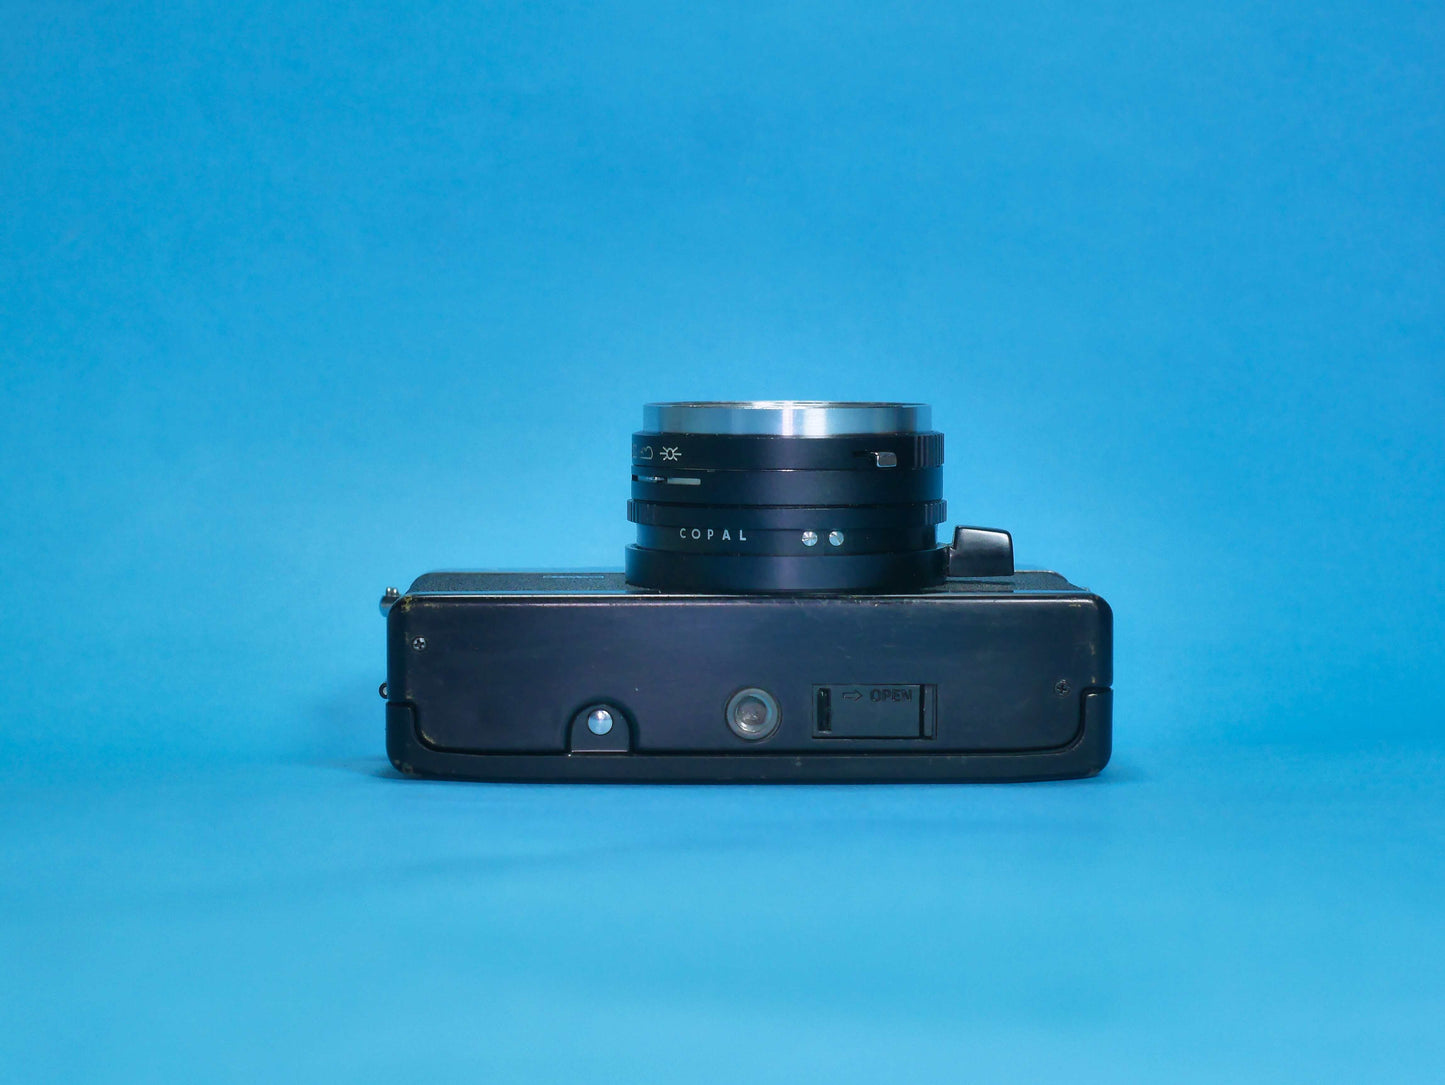 Canonet QL17 GIII Noir